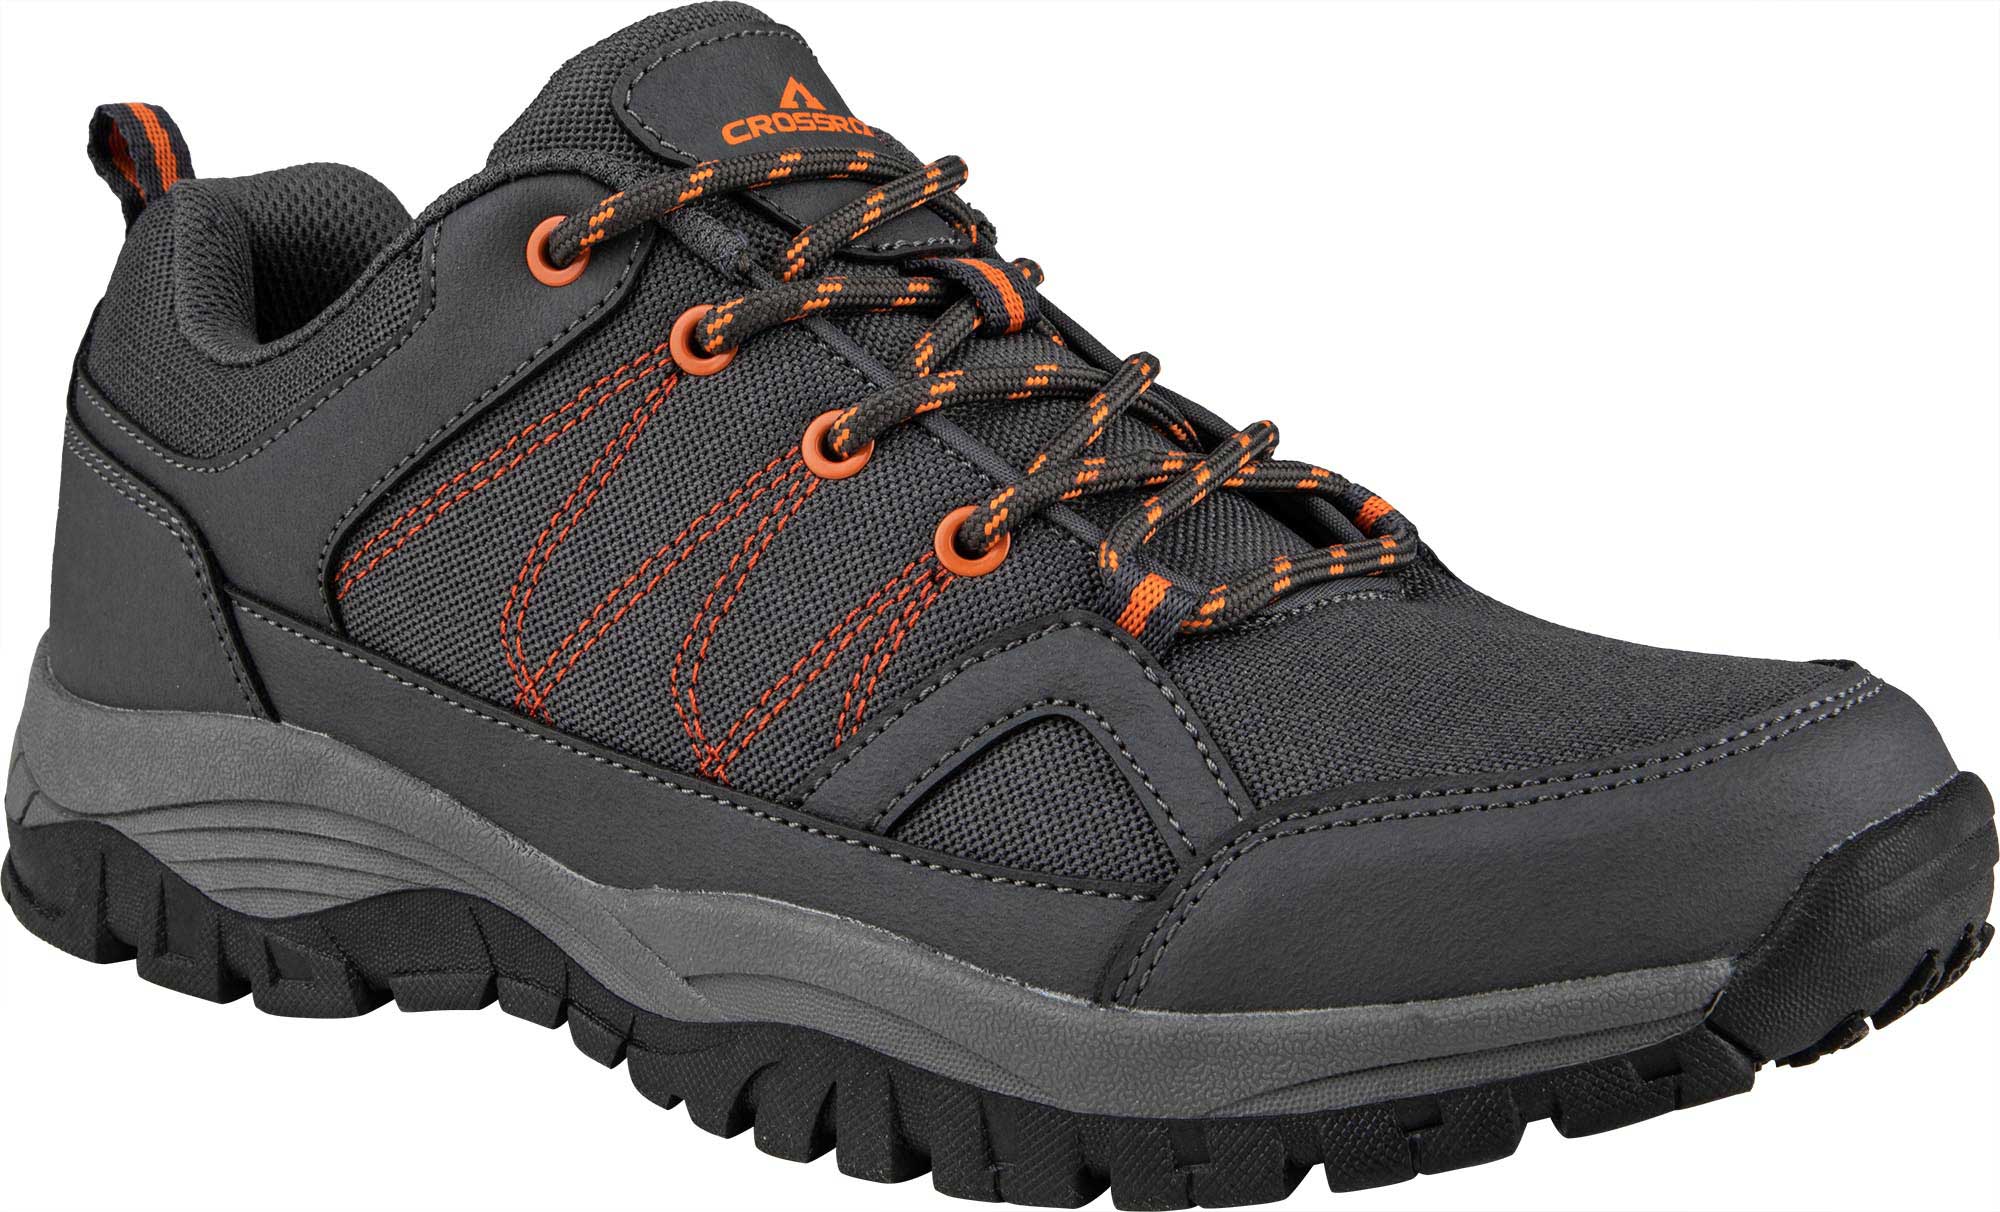 Men's trekking shoes